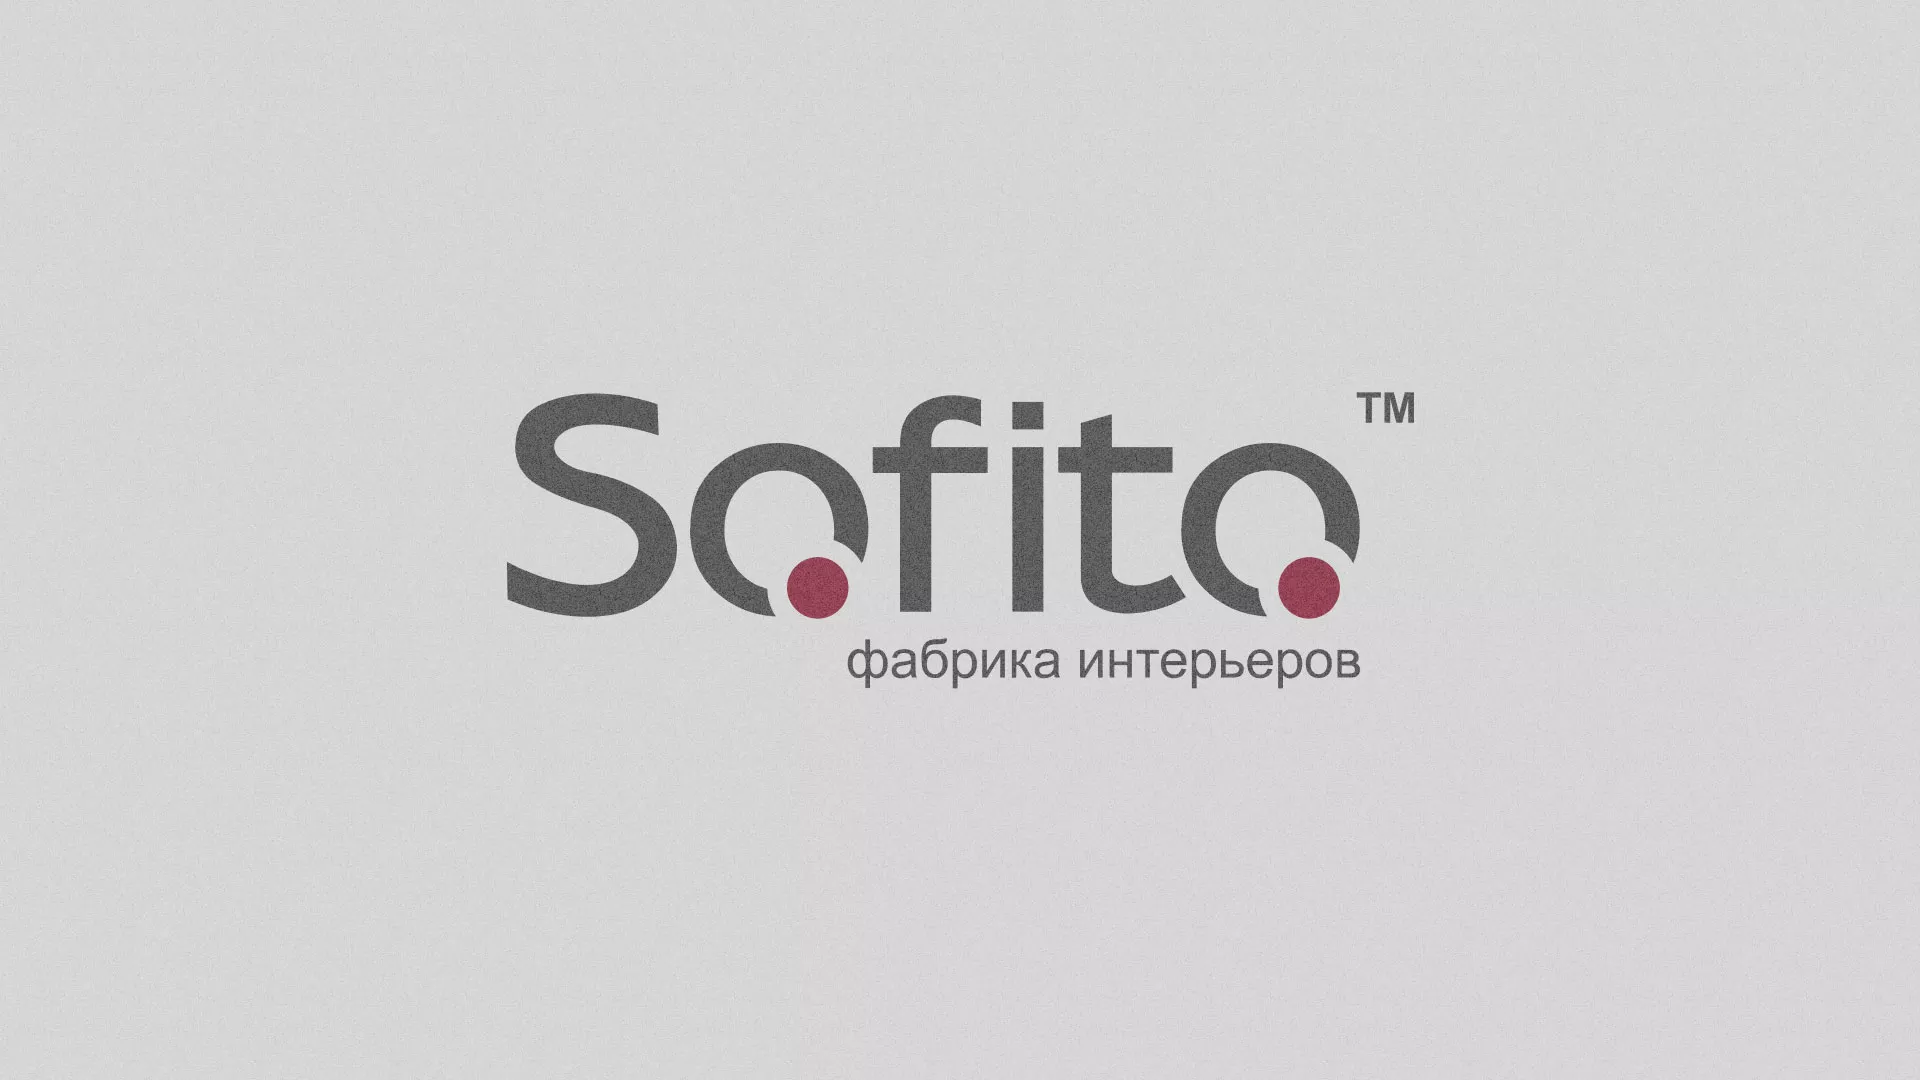 Создание сайта по натяжным потолкам для компании «Софито» в Тольятти